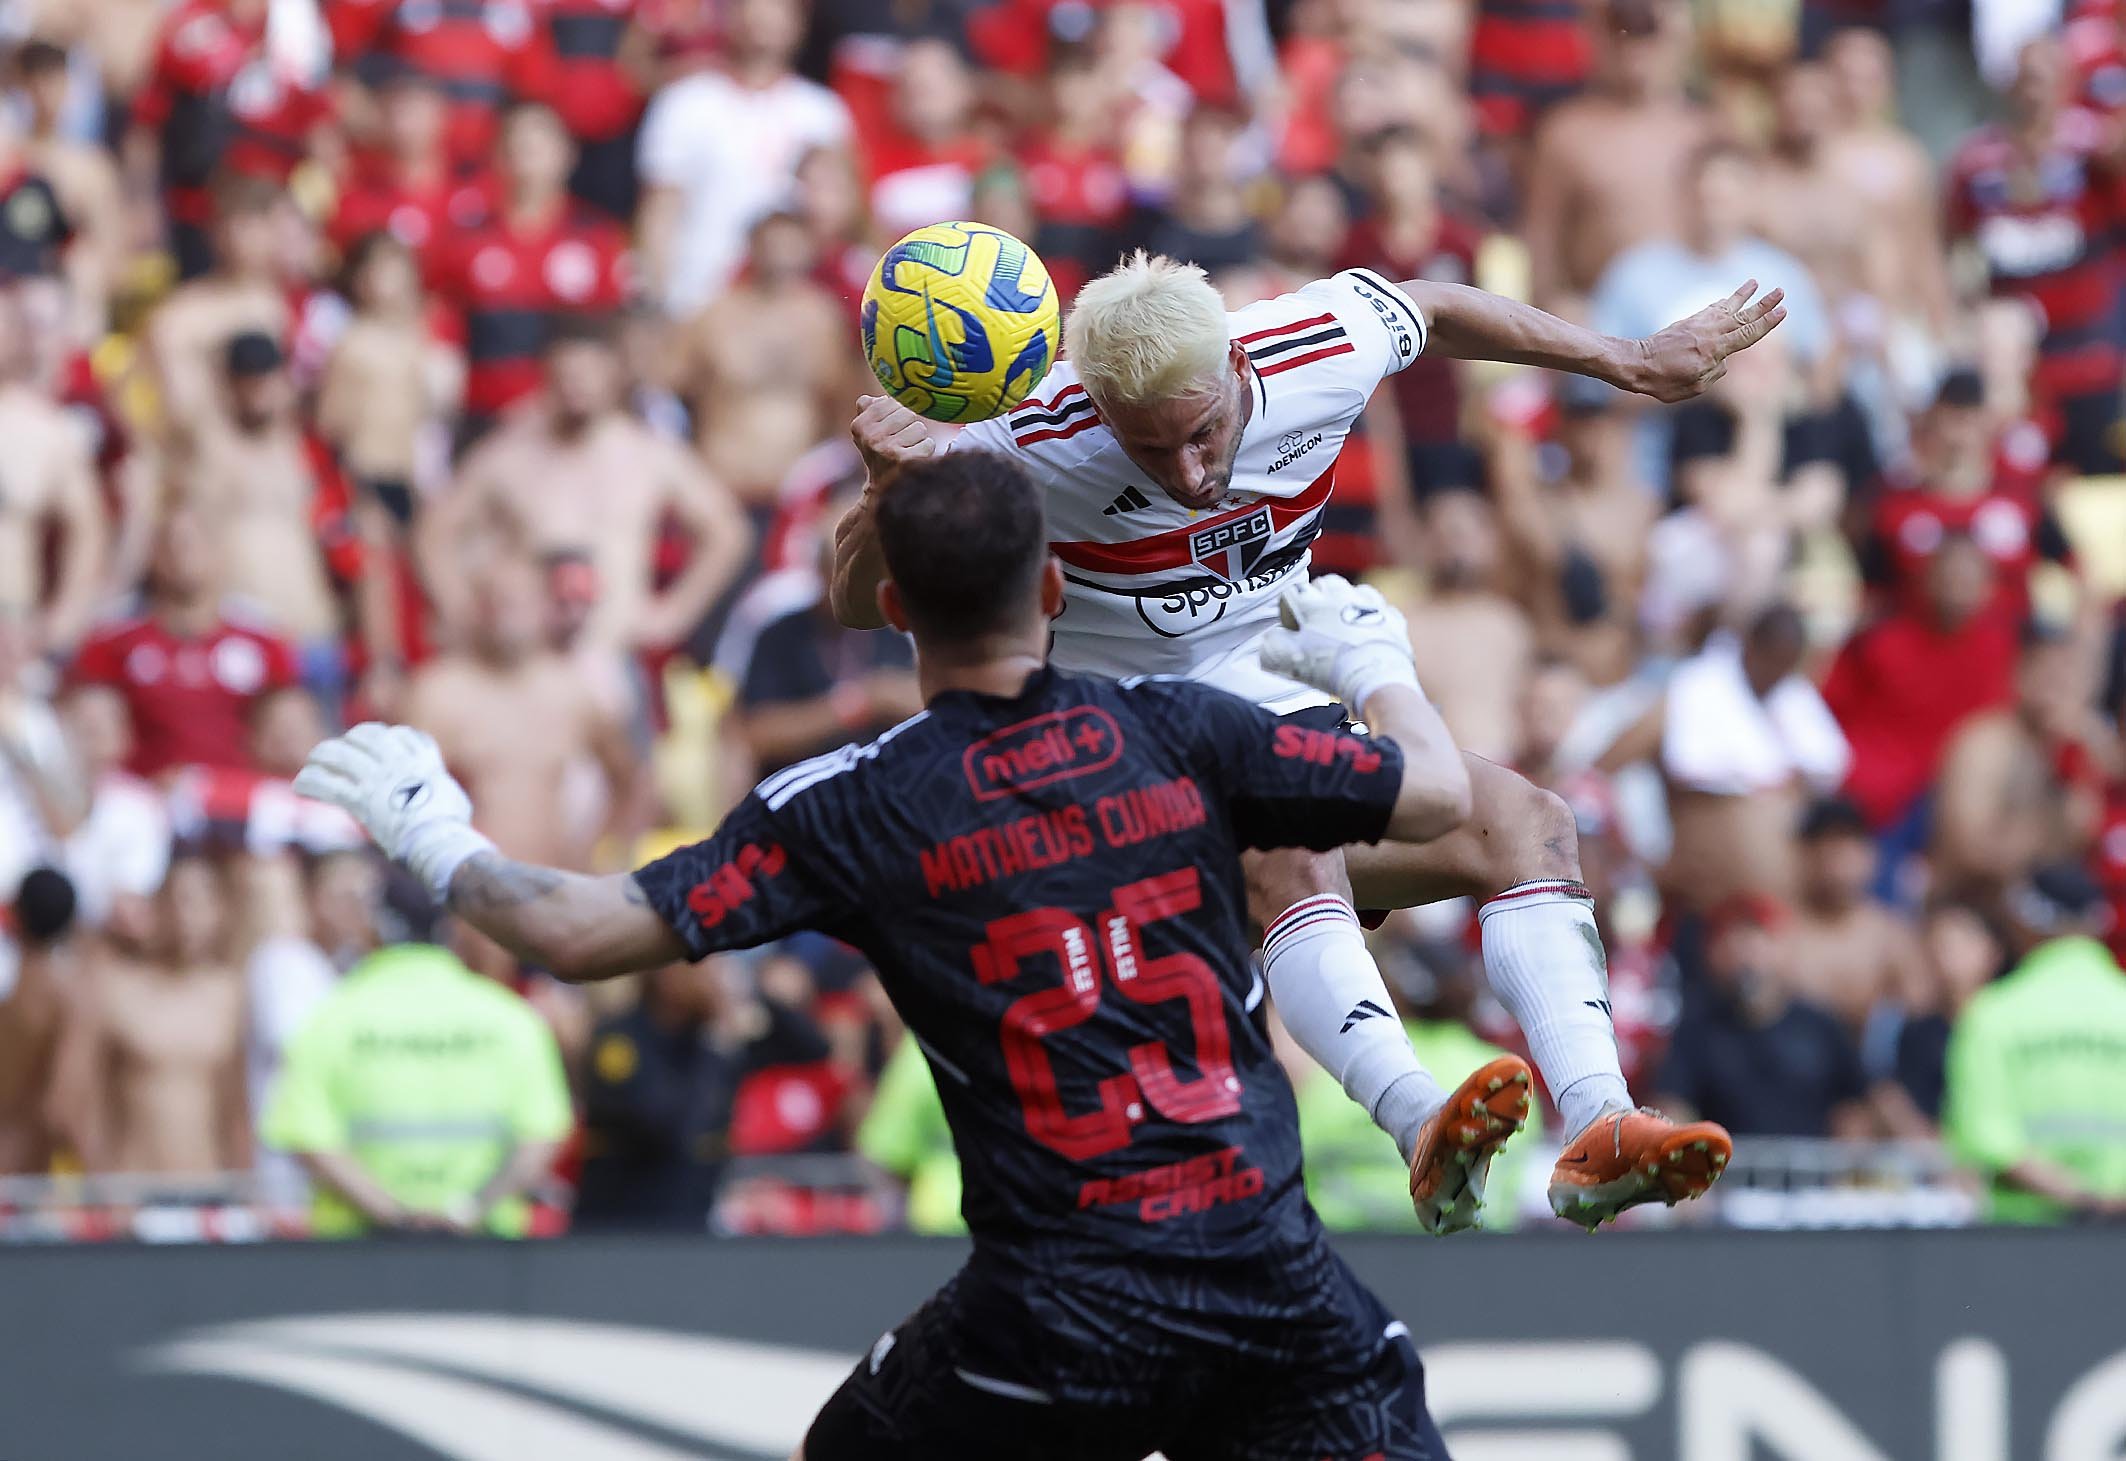 Confronto de Titãs: Athletico-PR x Flamengo Promete Grandes